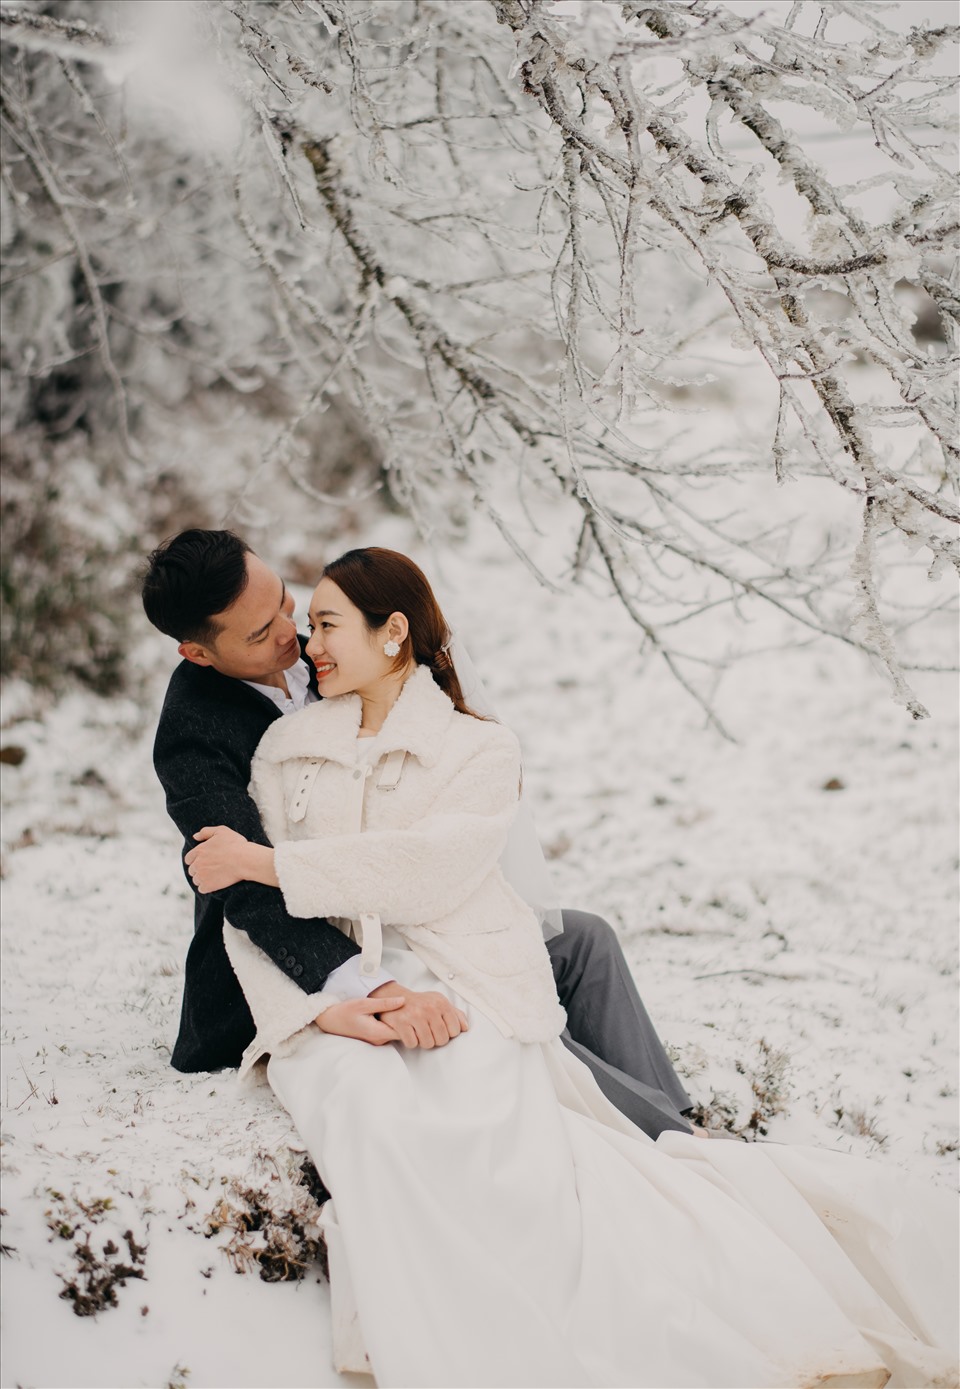 Không có gì thú vị hơn việc chụp ảnh cưới dưới mưa tuyết. Những hạt mưa vàng rơi rụng, hay những bông tuyết lấp lánh sẽ tạo ra những bức ảnh ngọt ngào và đầy cảm xúc.